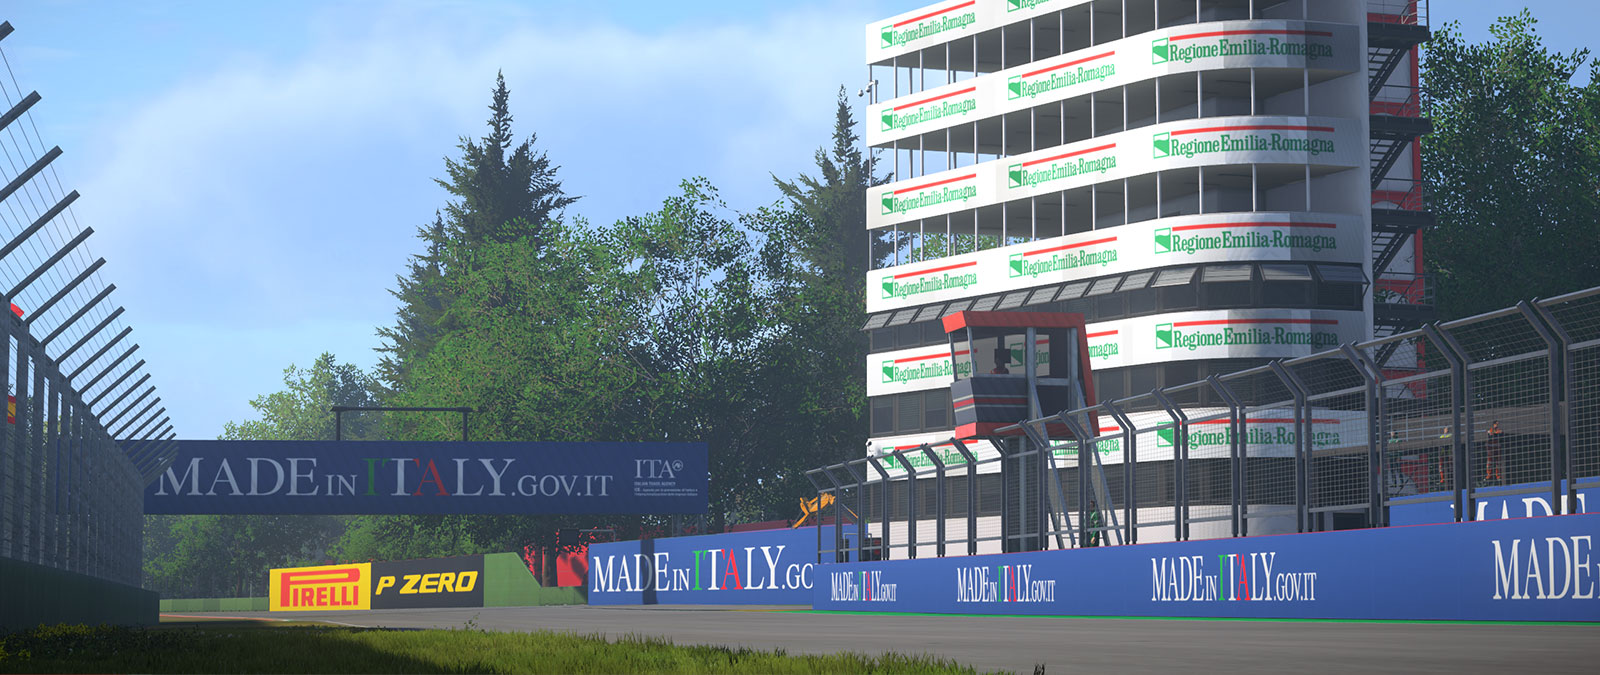 Autódromo de Imola com um prédio com muitas varandas acima de um muro patrocinado pela Made In Italy